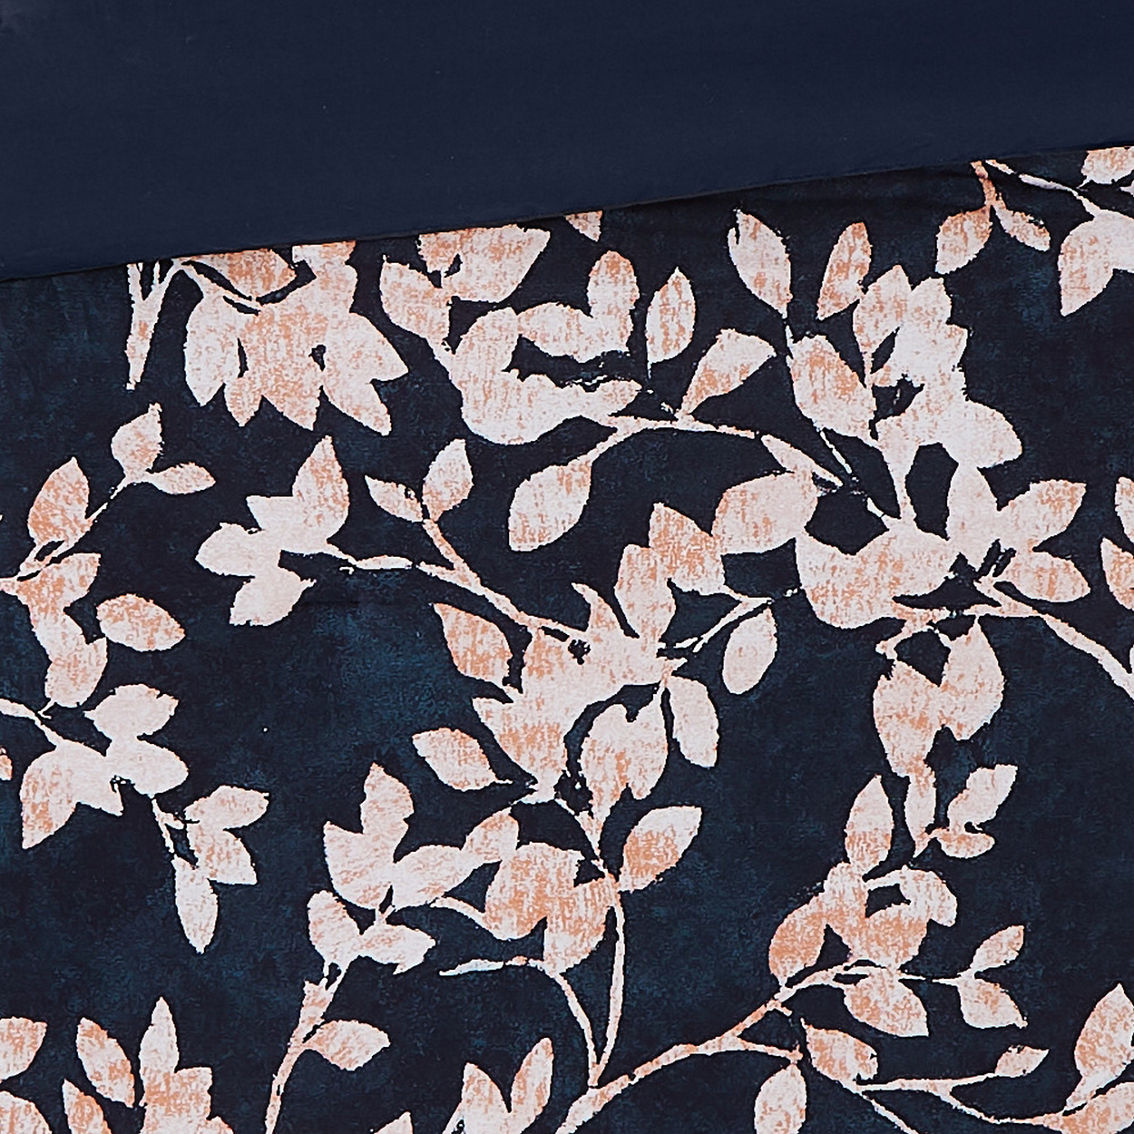 Vince Camuto Amaya Floral Comforter Set | Bedding Sets | Household ...